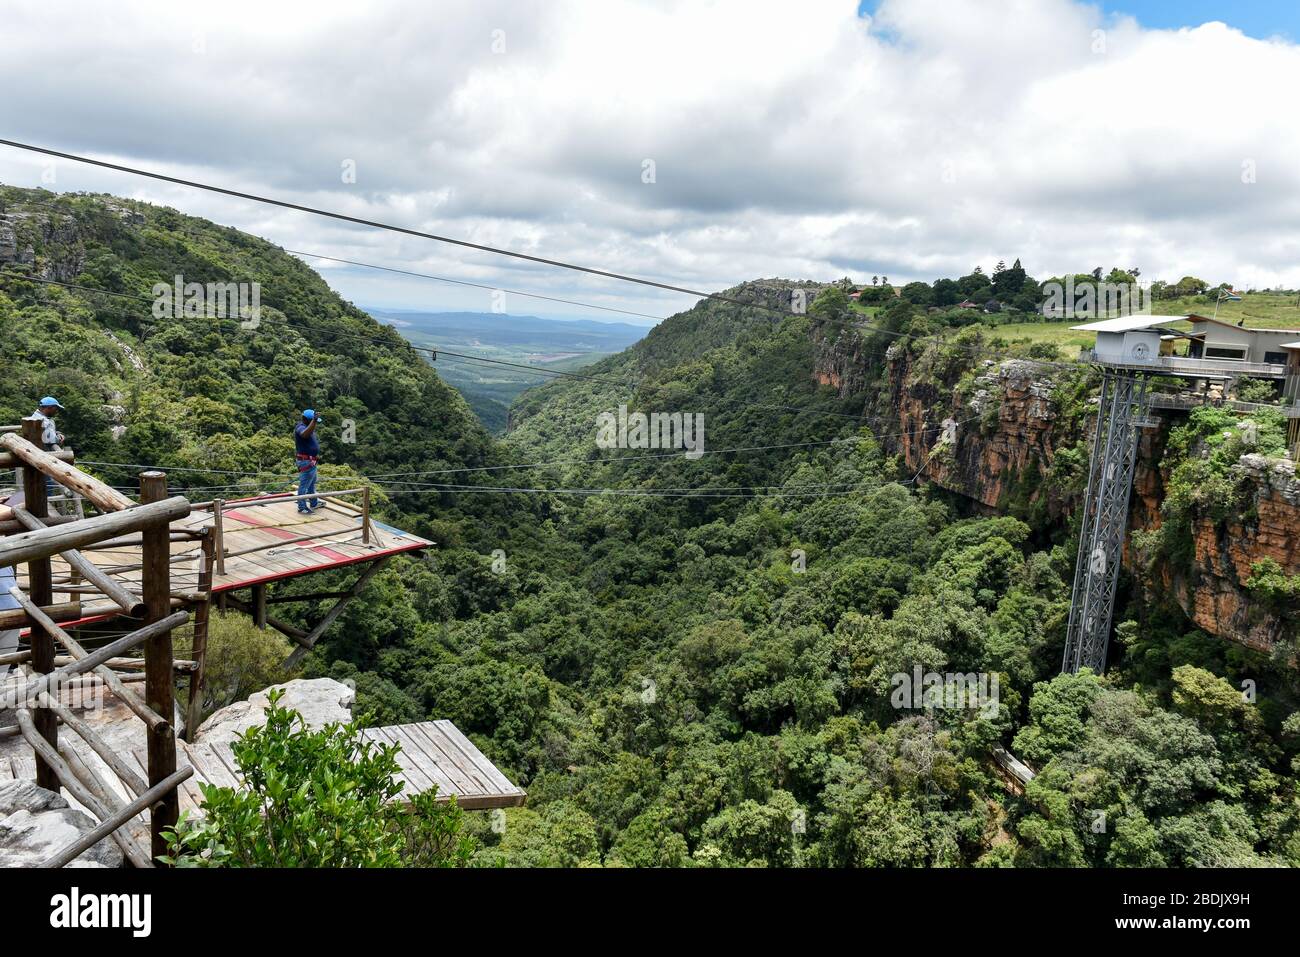 El Big Swing (puenting) en Graskop (Ruta panorámica) donde la gente disfruta de uno de los saltos más altos en Sudáfrica Foto de stock